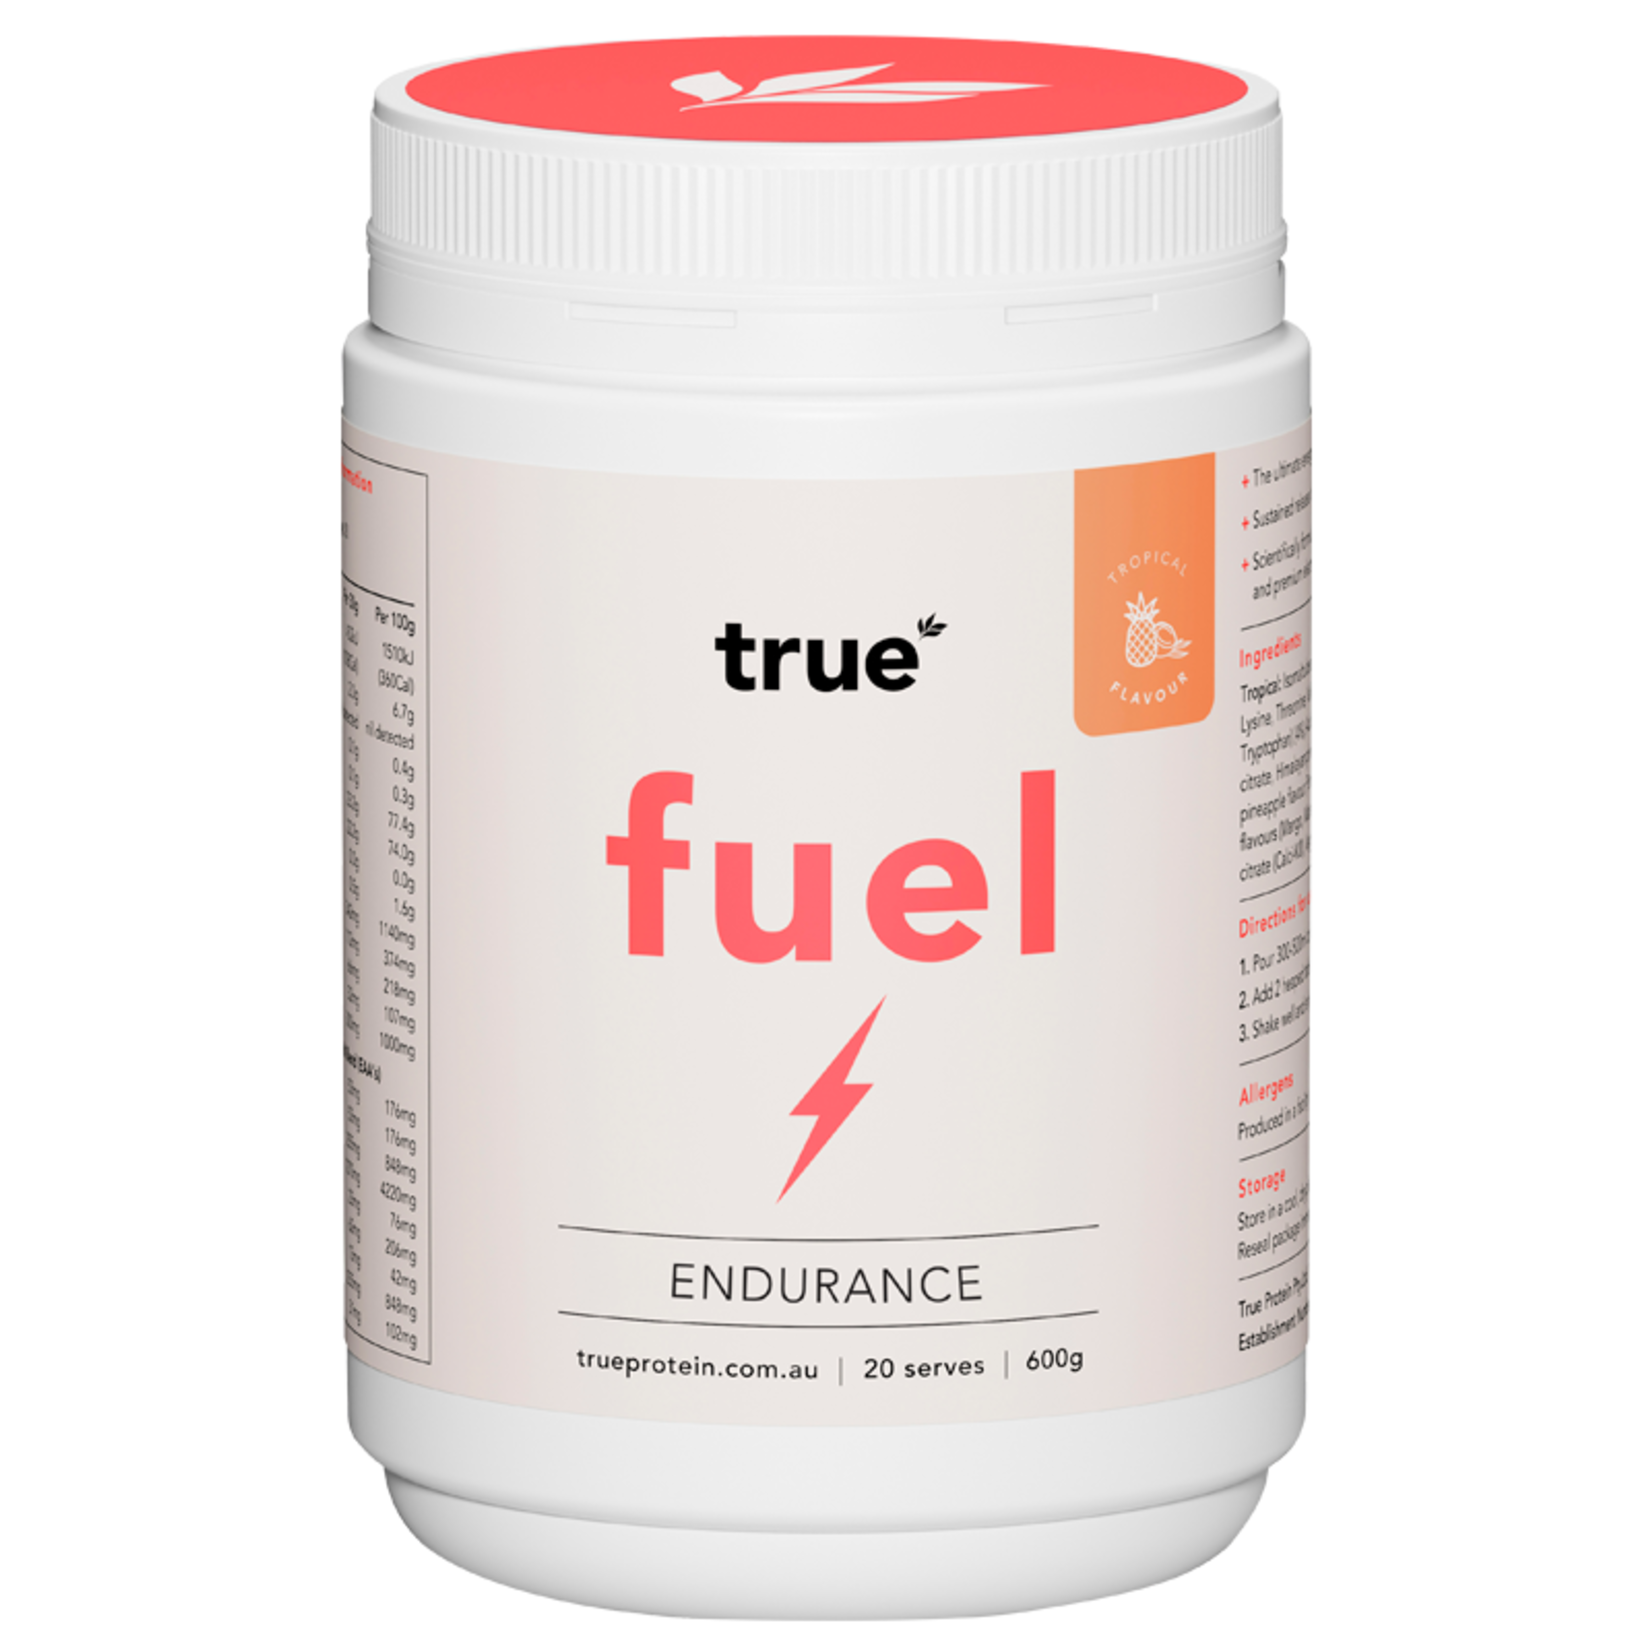 True Protein True Fuel